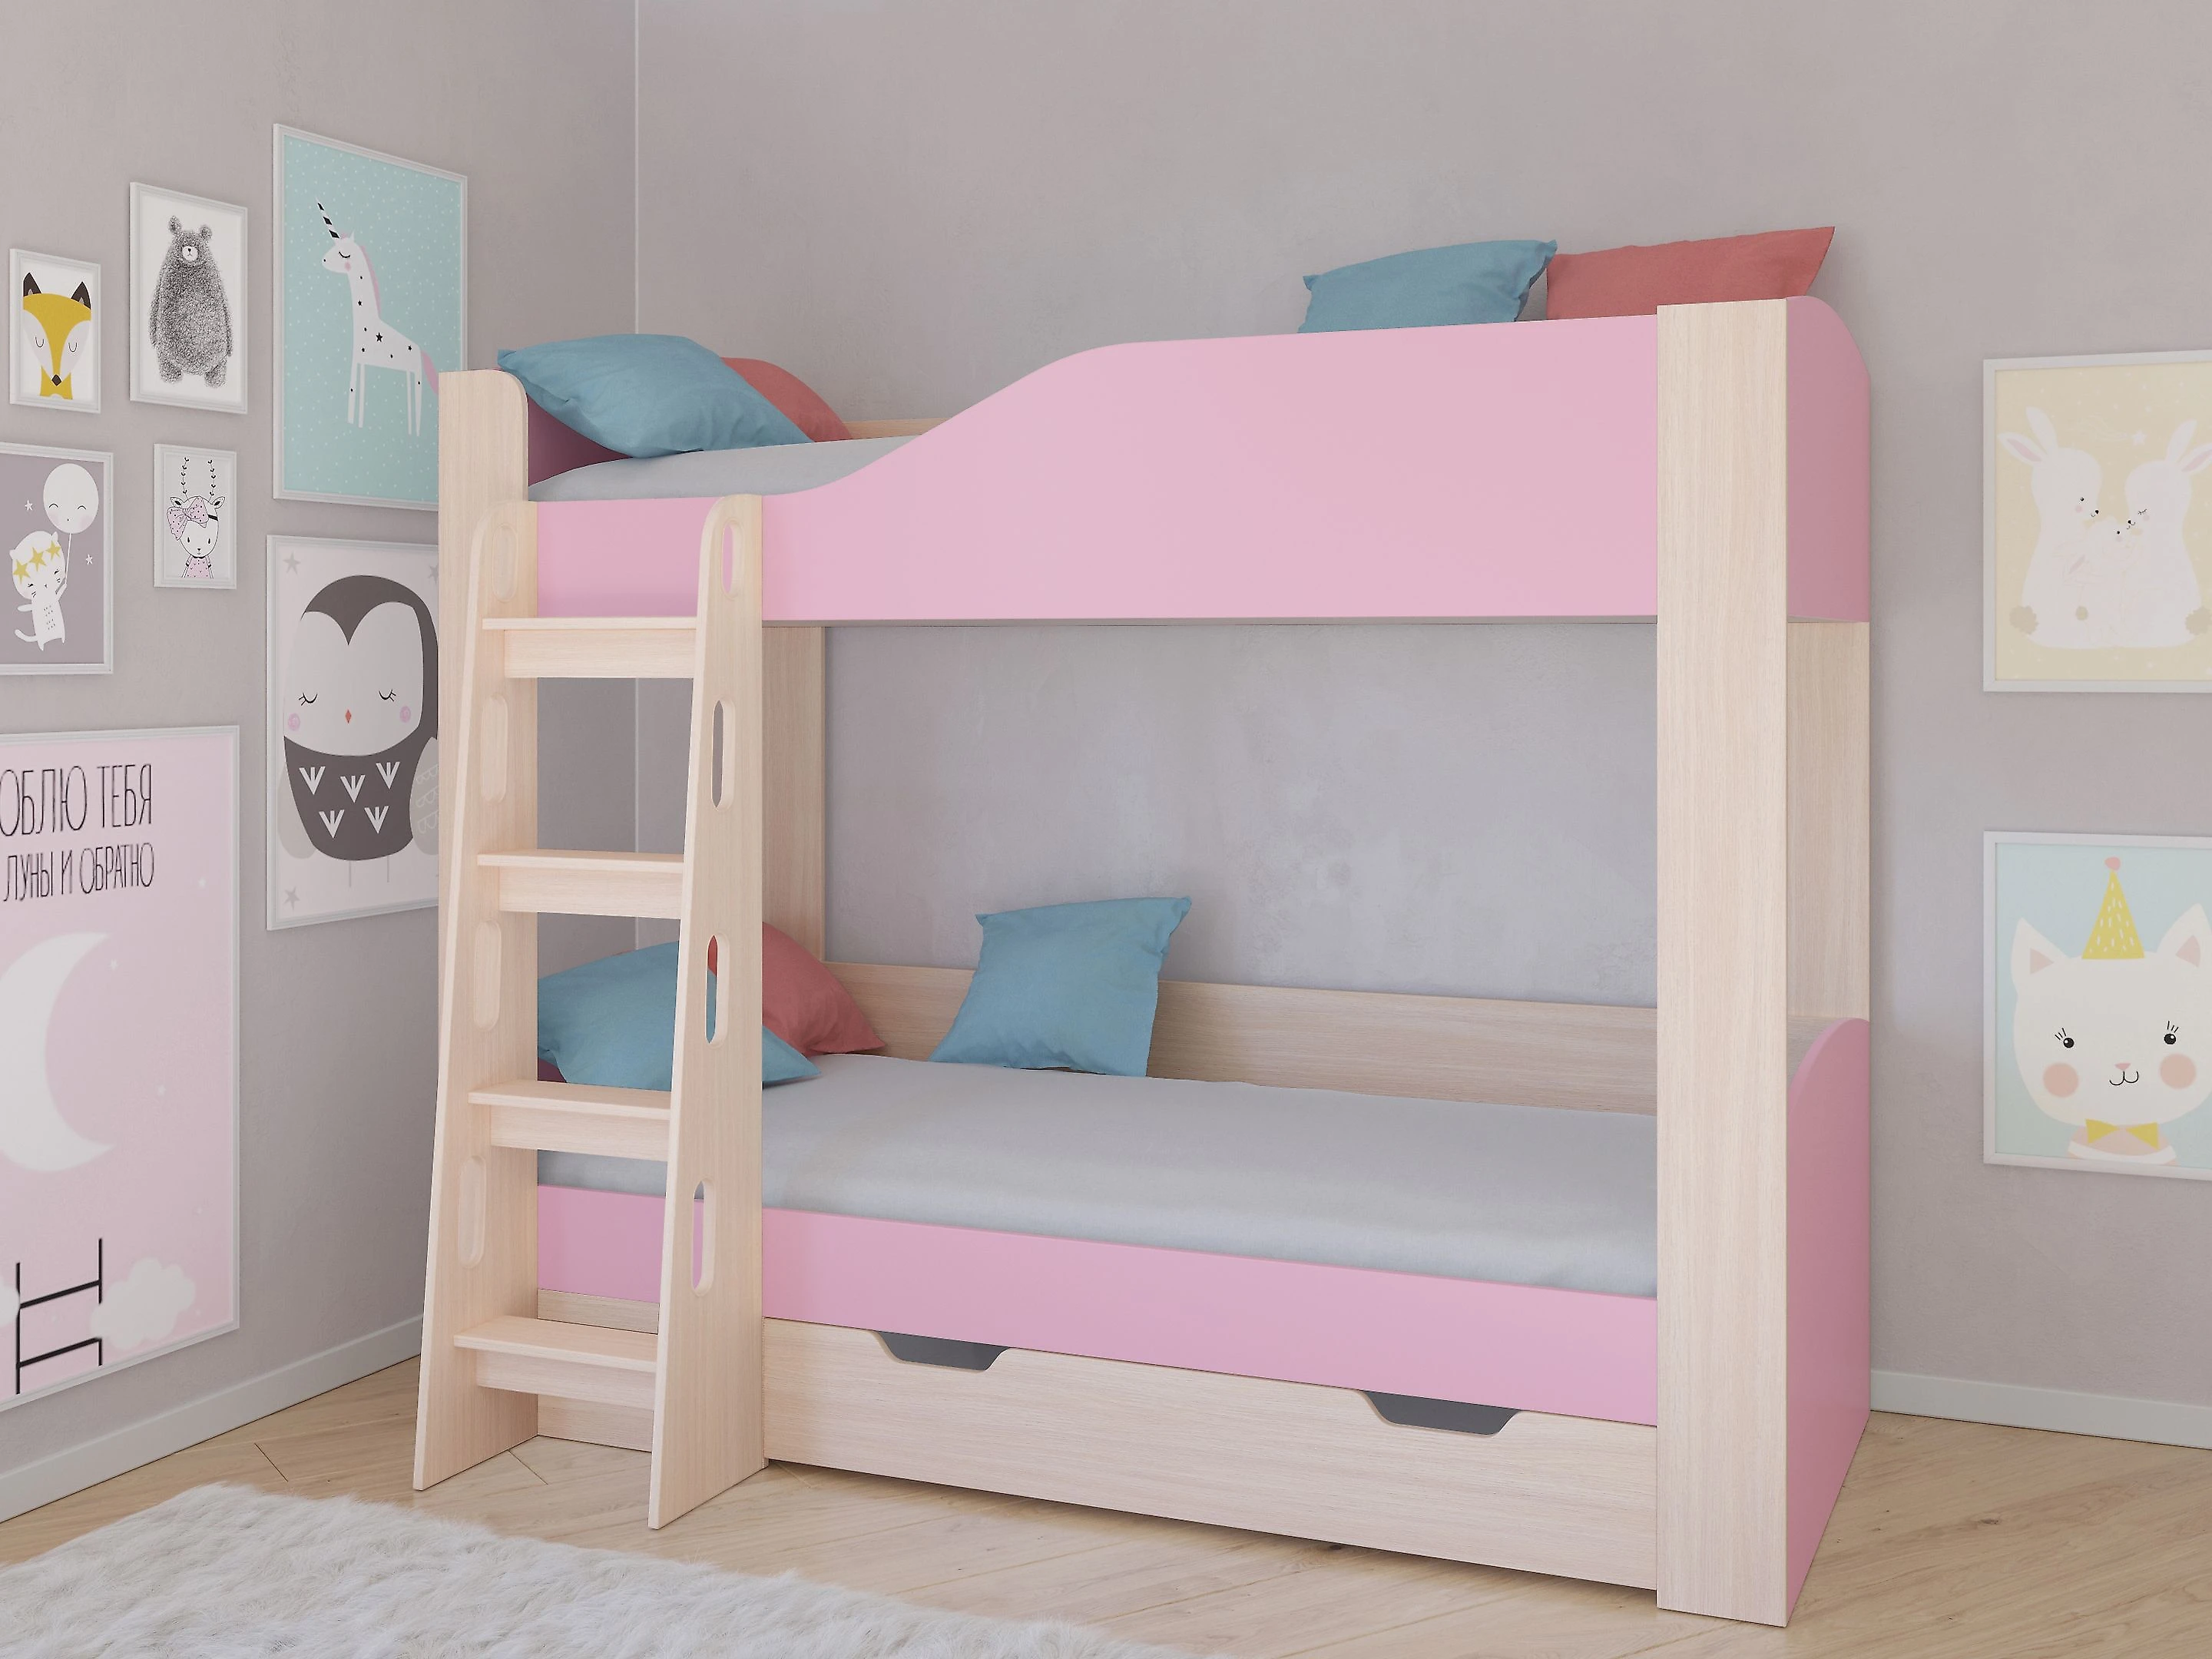 Детская кровать чердак  Астра-2 (Принцесса) Розовый